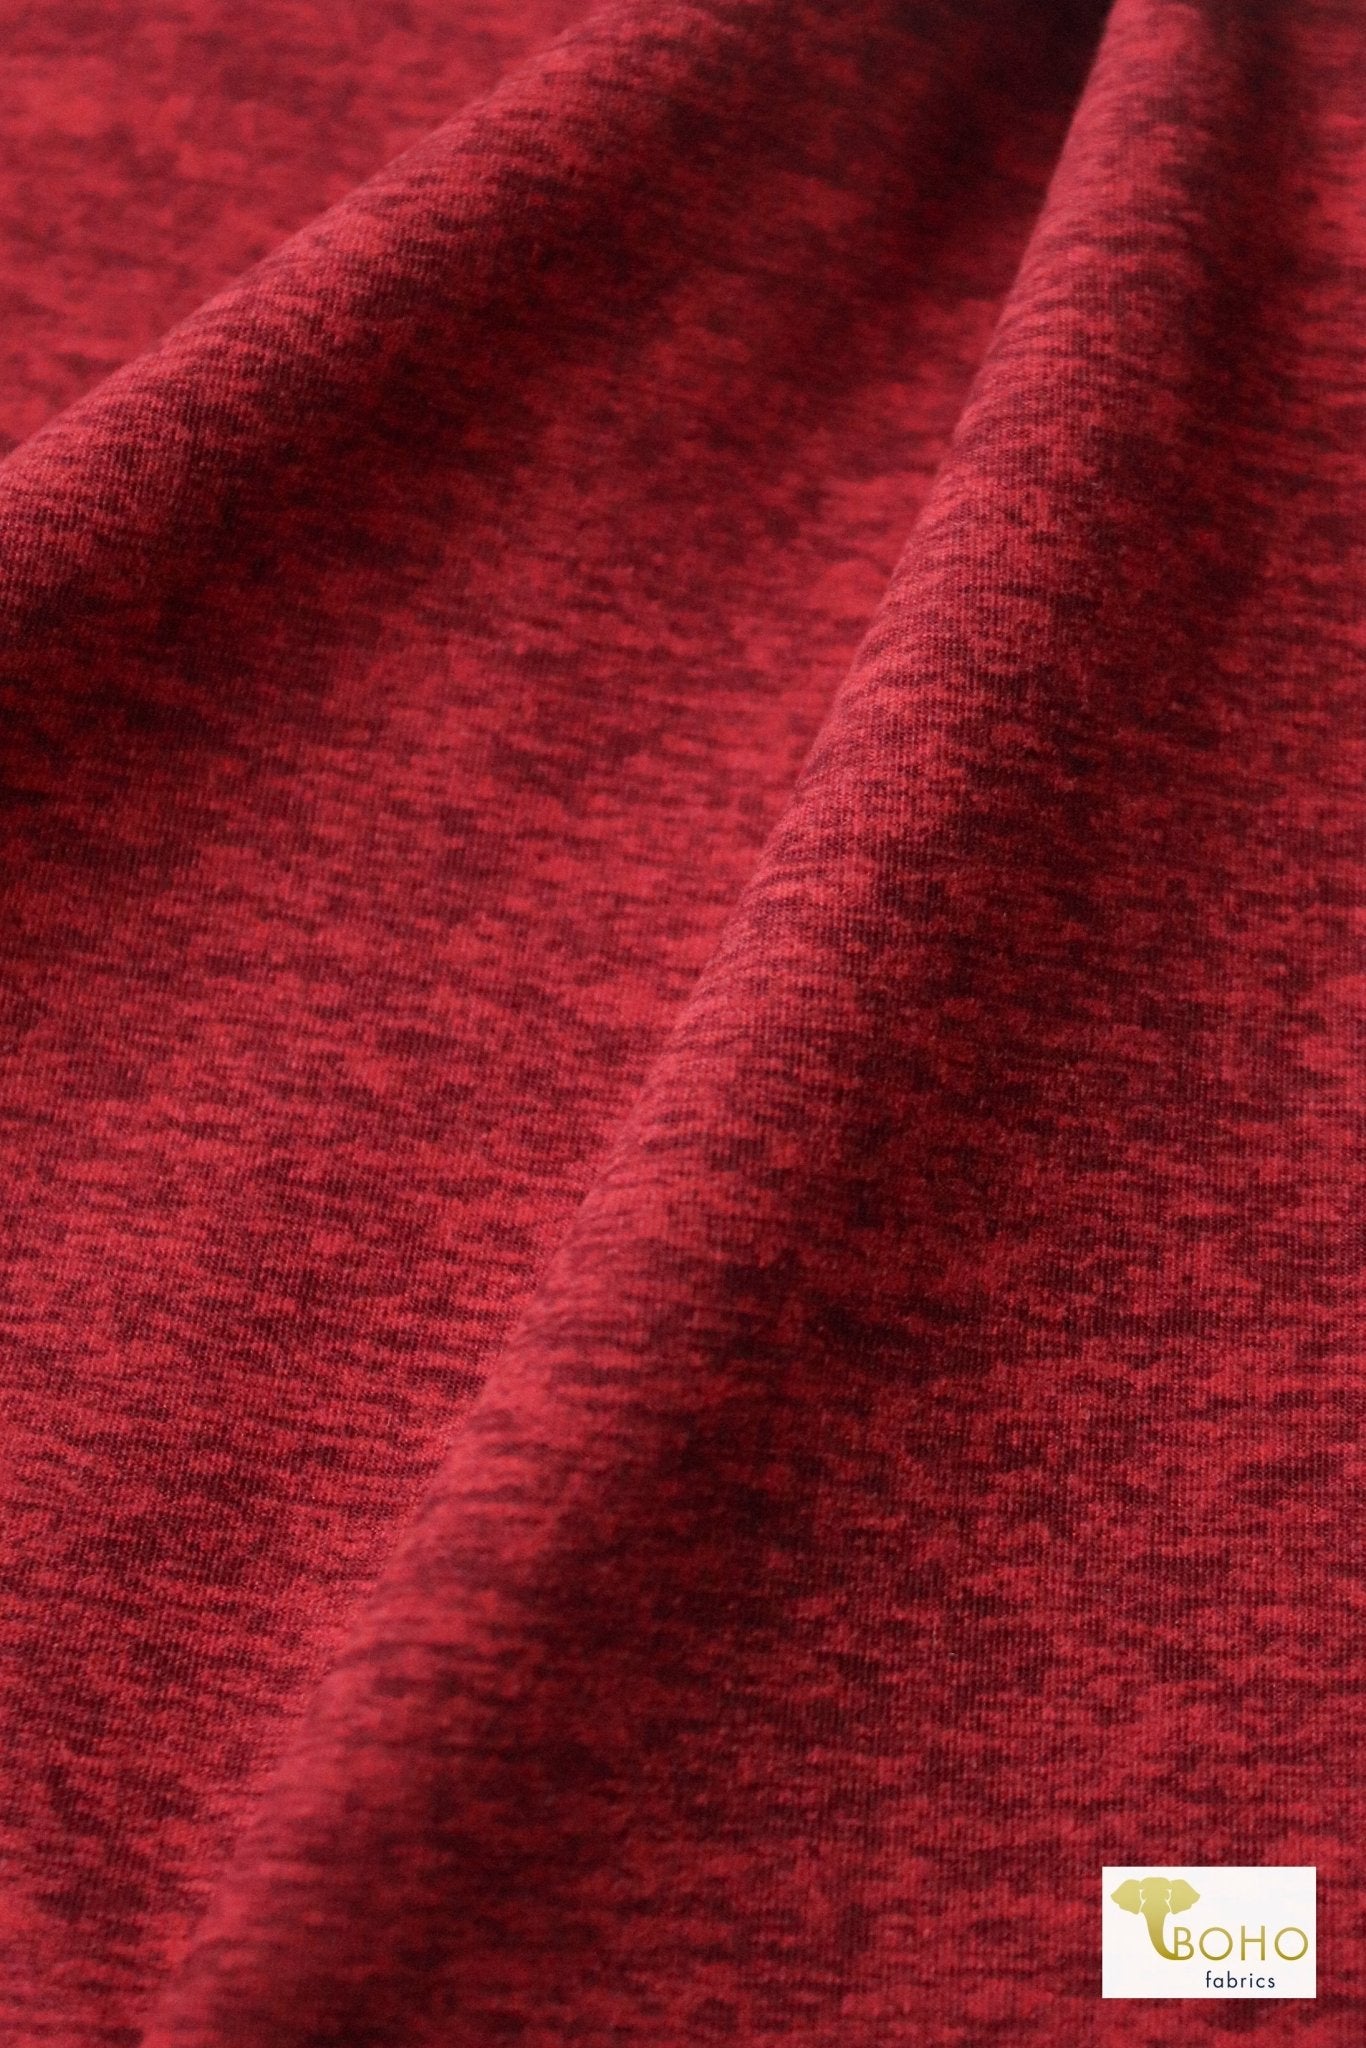 Red Space Dye, Brushed Athletic Knit - Boho Fabrics